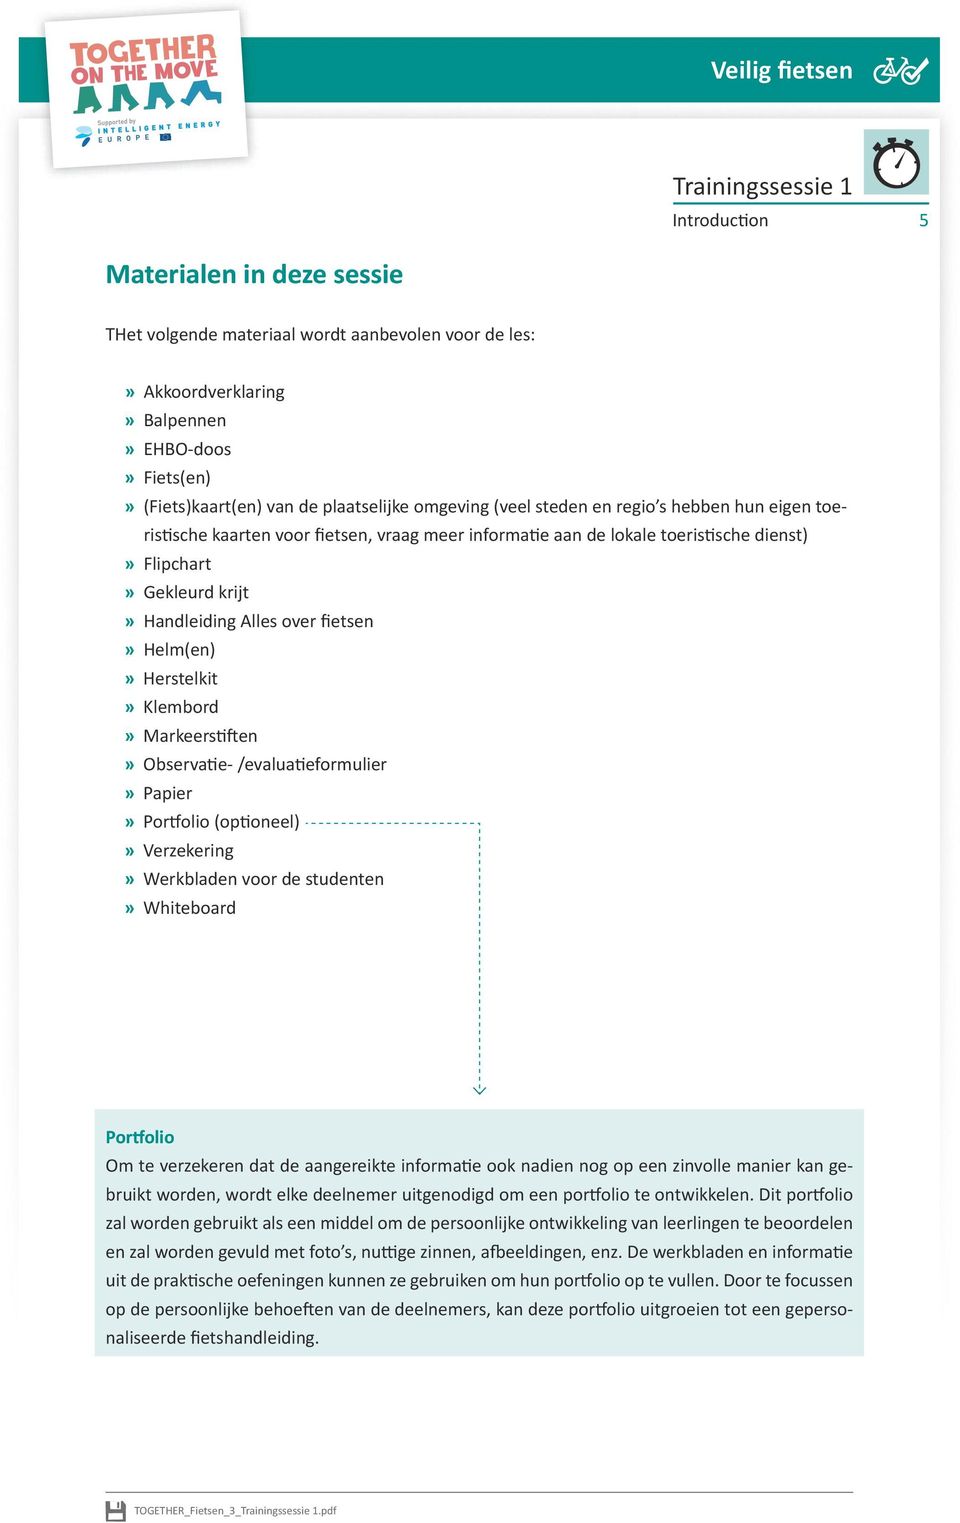 Herstelkit Klembord Markeerstiften Observatie- /evaluatieformulier Papier Portfolio (optioneel) Verzekering Werkbladen voor de studenten Whiteboard Portfolio Om te verzekeren dat de aangereikte